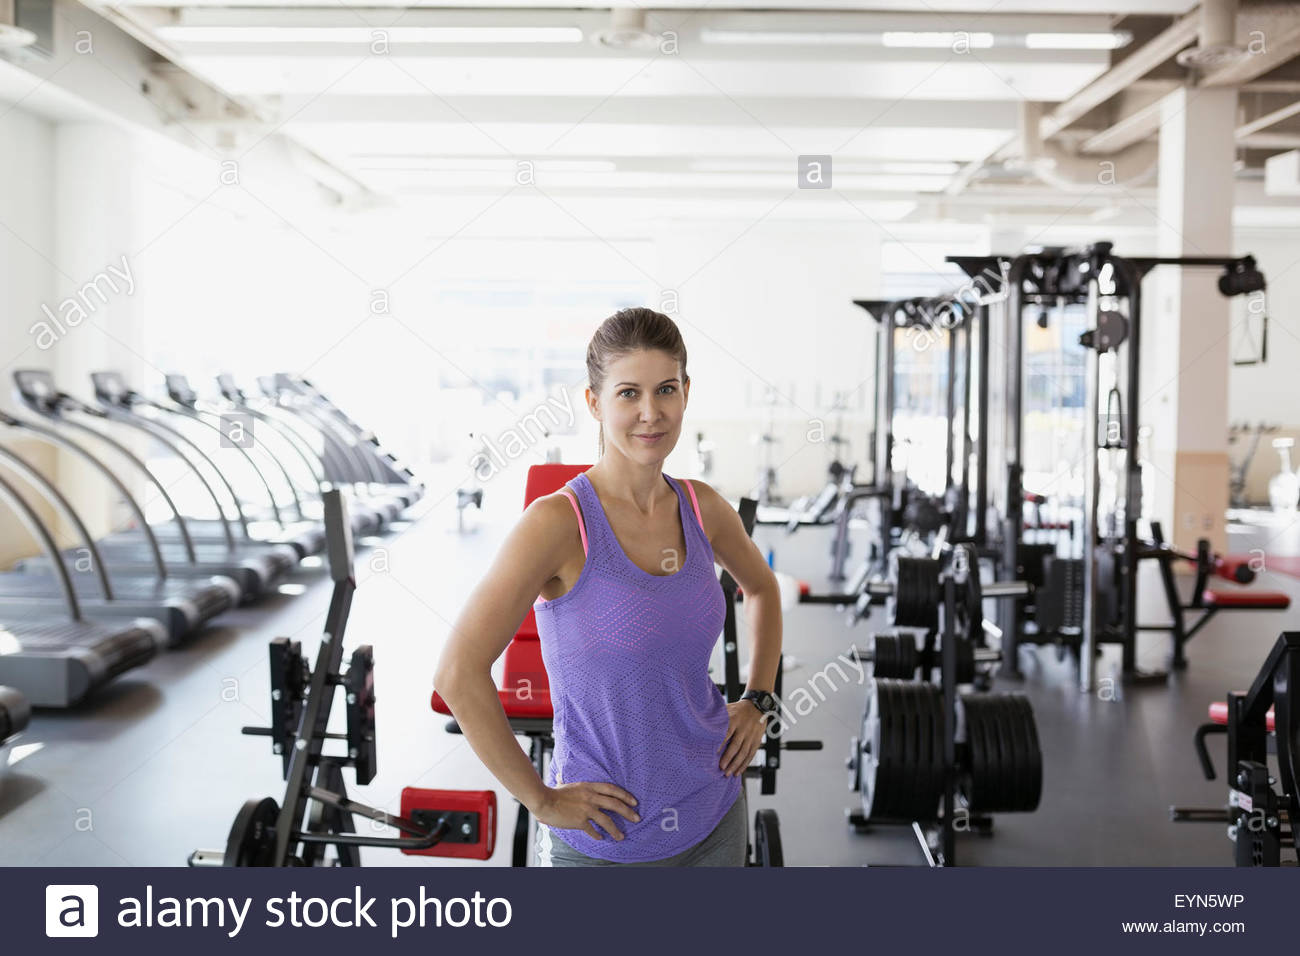 Portrait confident woman at gym Stock Photo